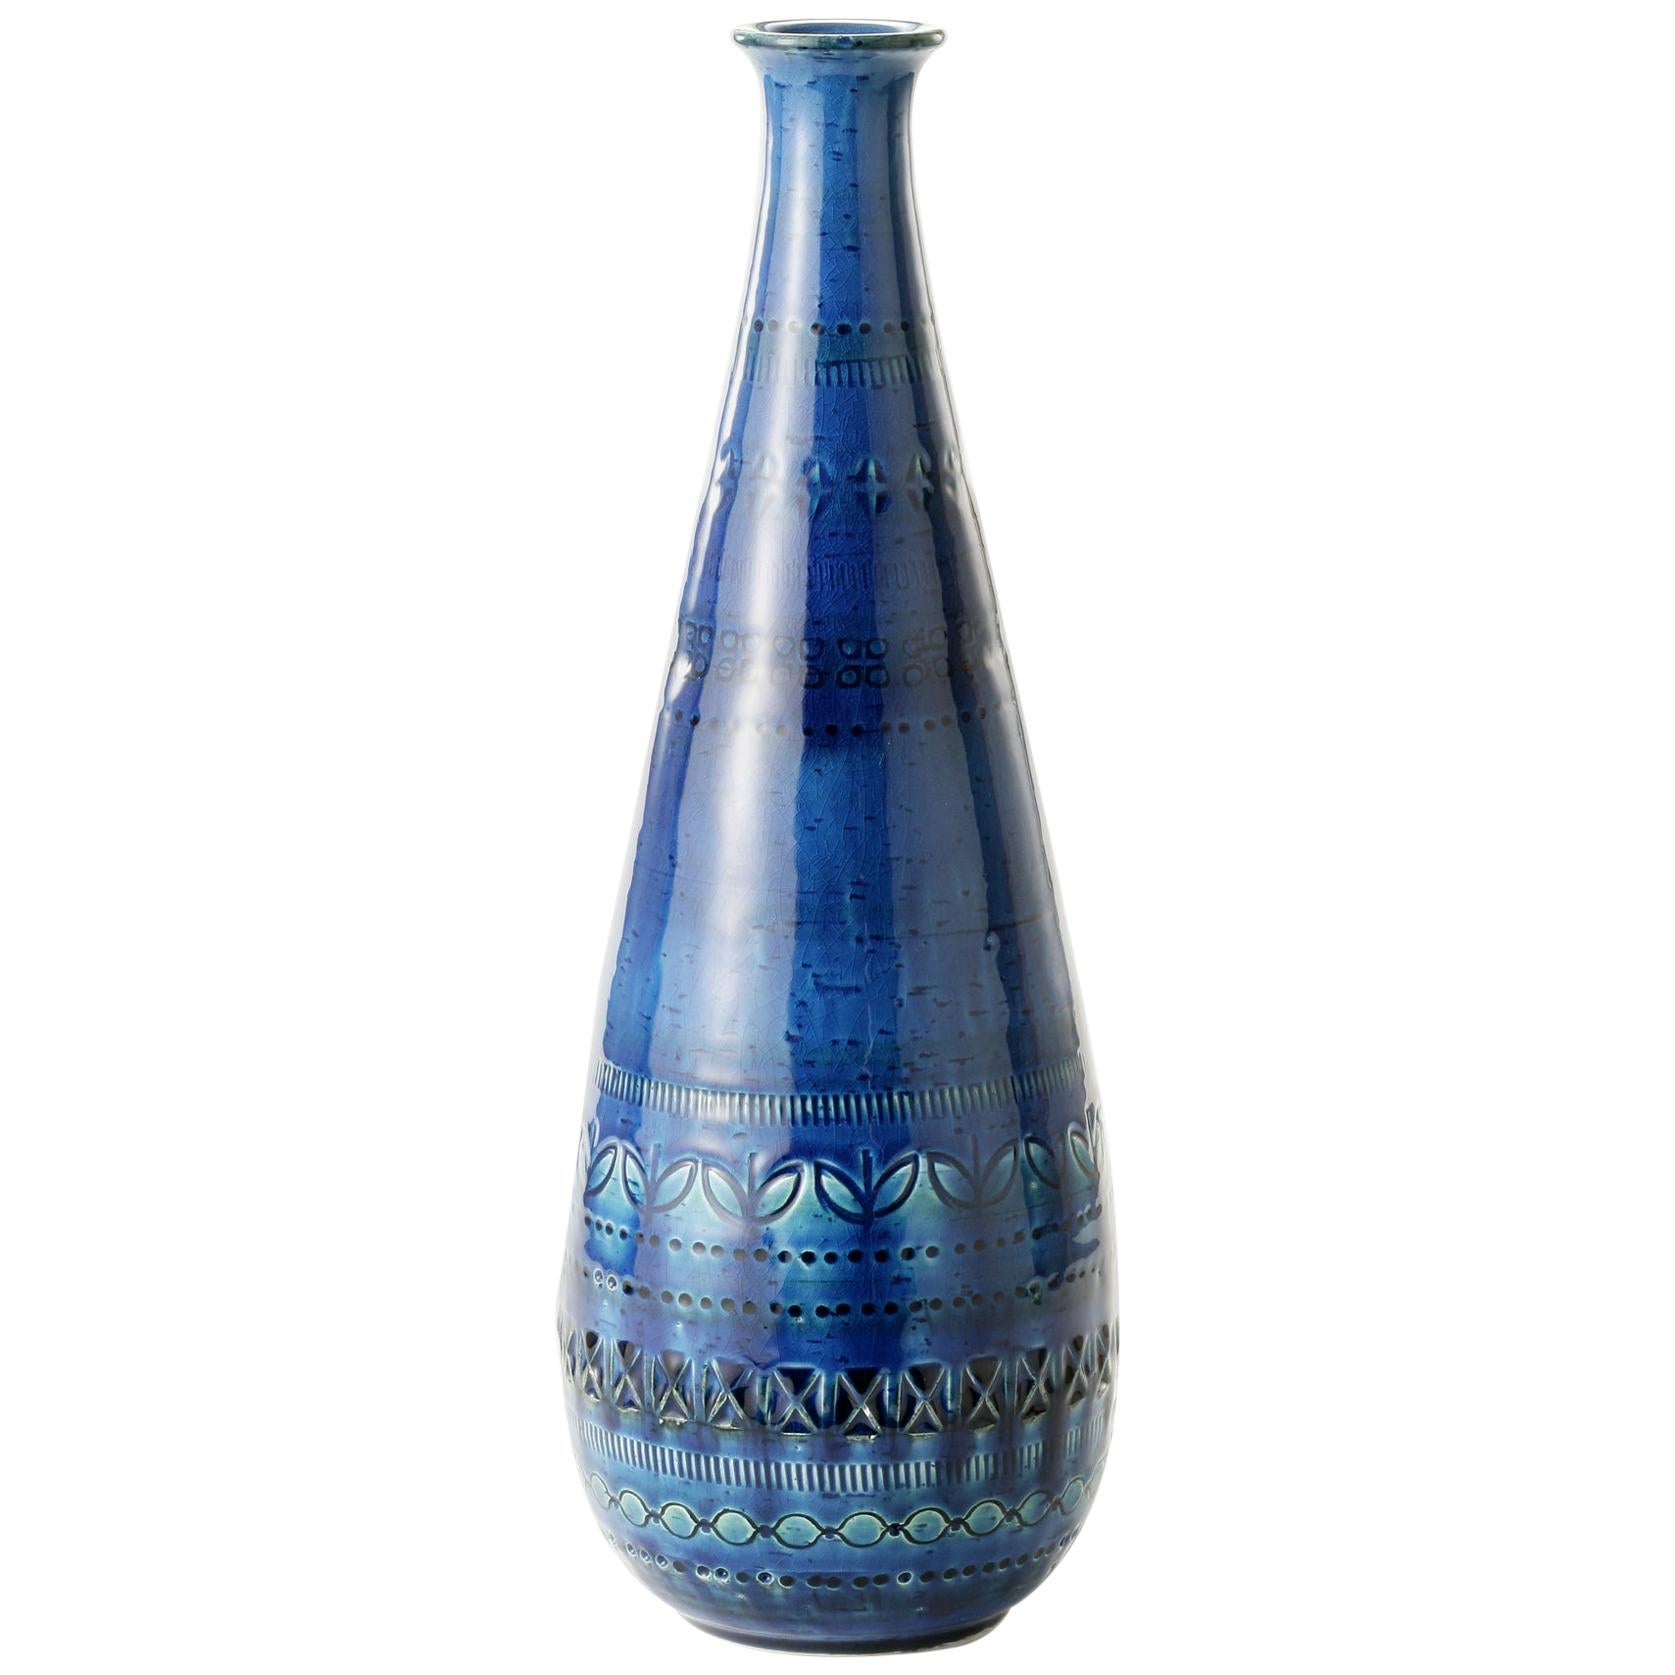 ZZ999-185, Made in Italy, Designer Aldo Londi, Material Ceramic, Color Blu For Sale